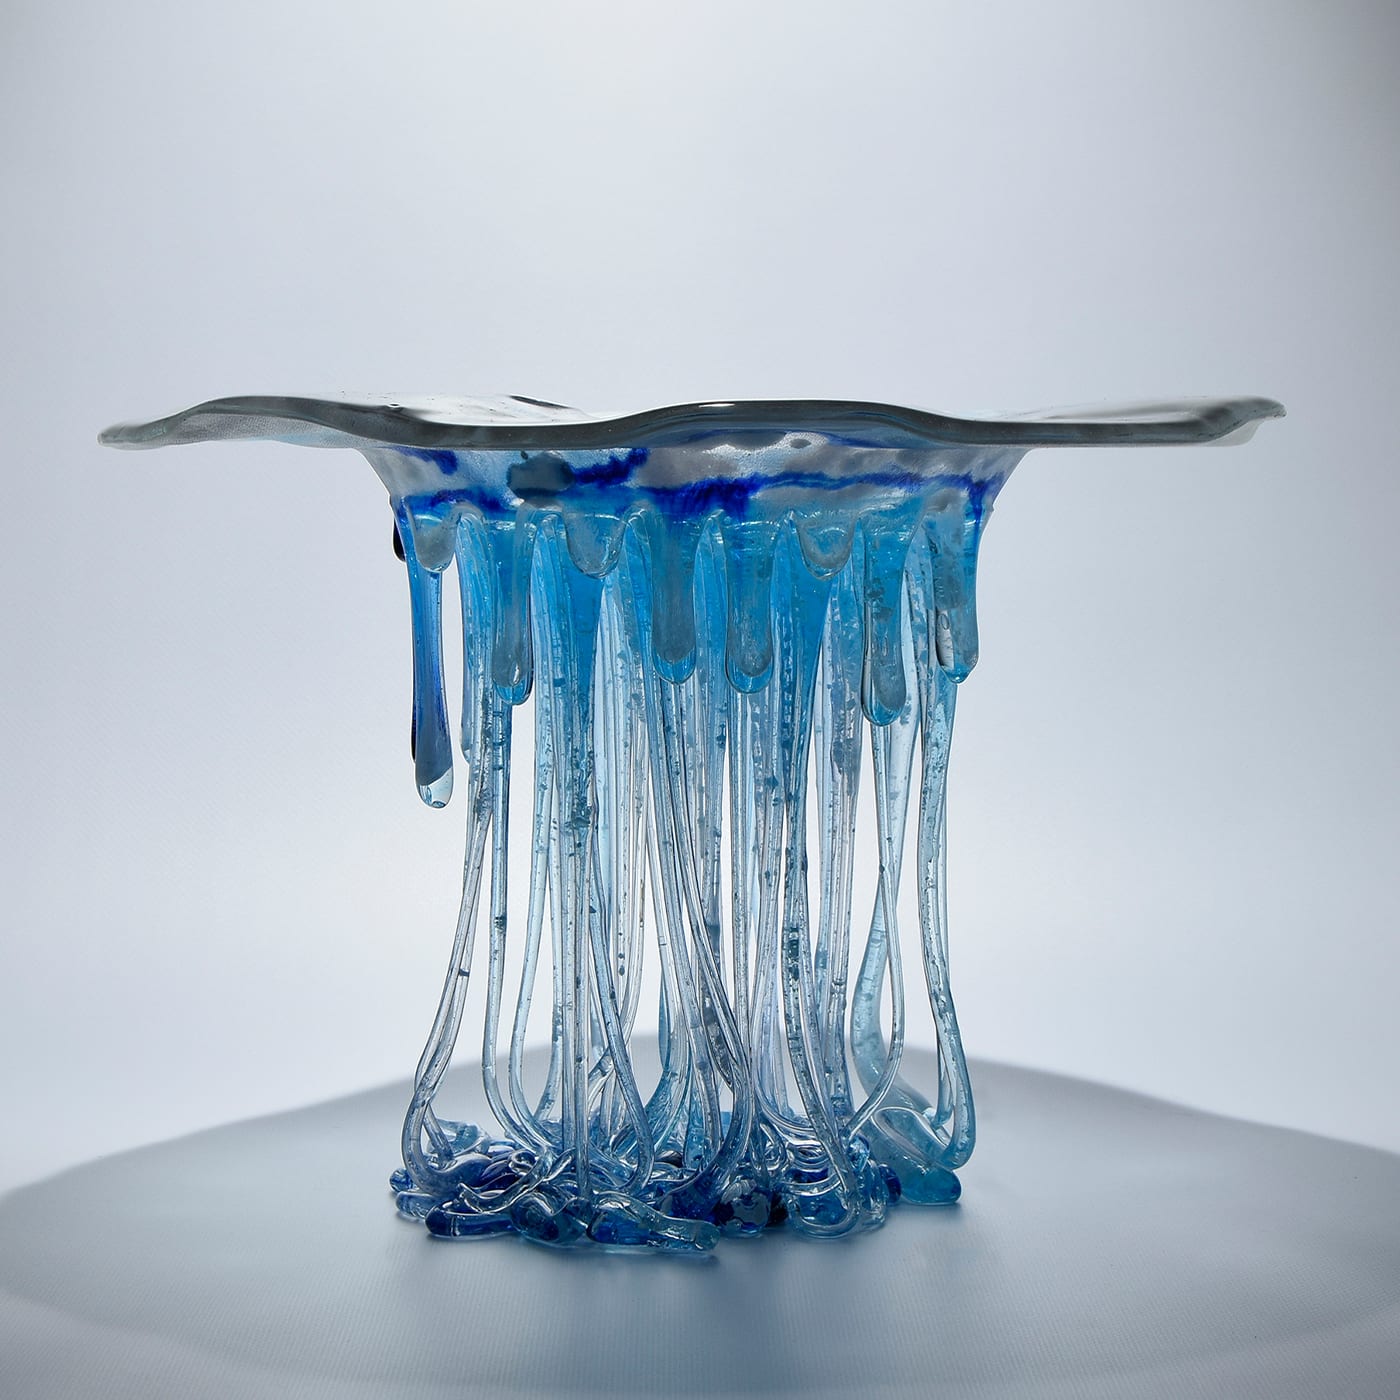 Acqua Water Source Light-Blue Sculpture - Daniela Forti